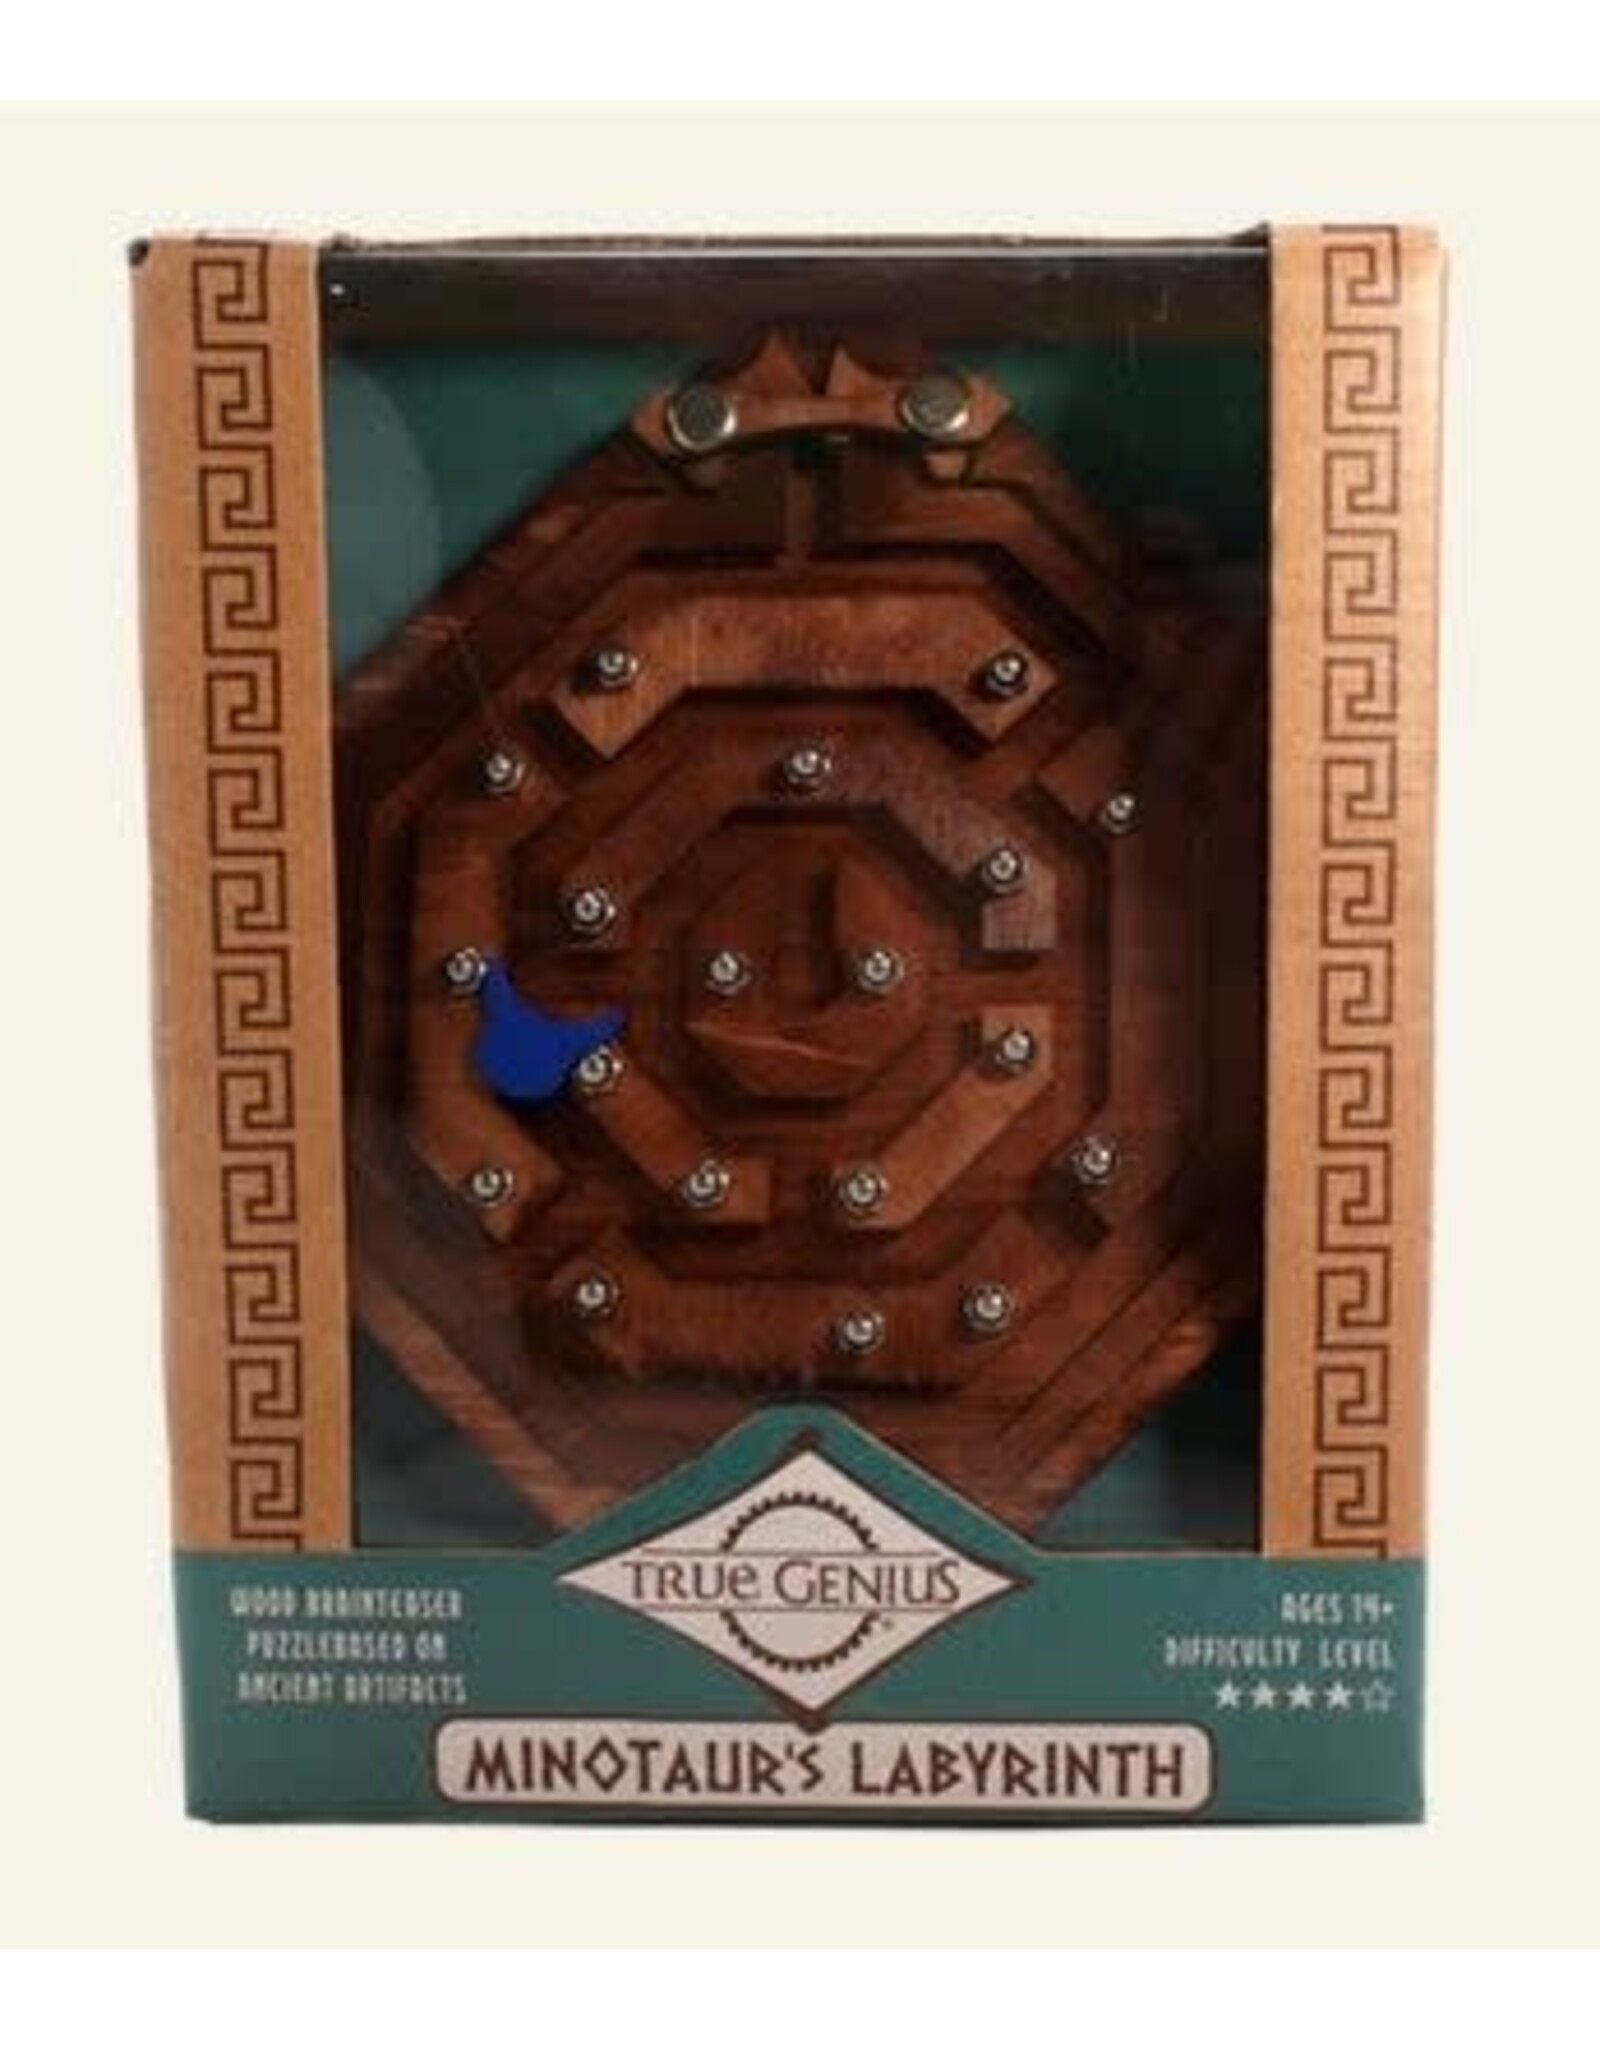 True Genius Minotaur's Labyrinth